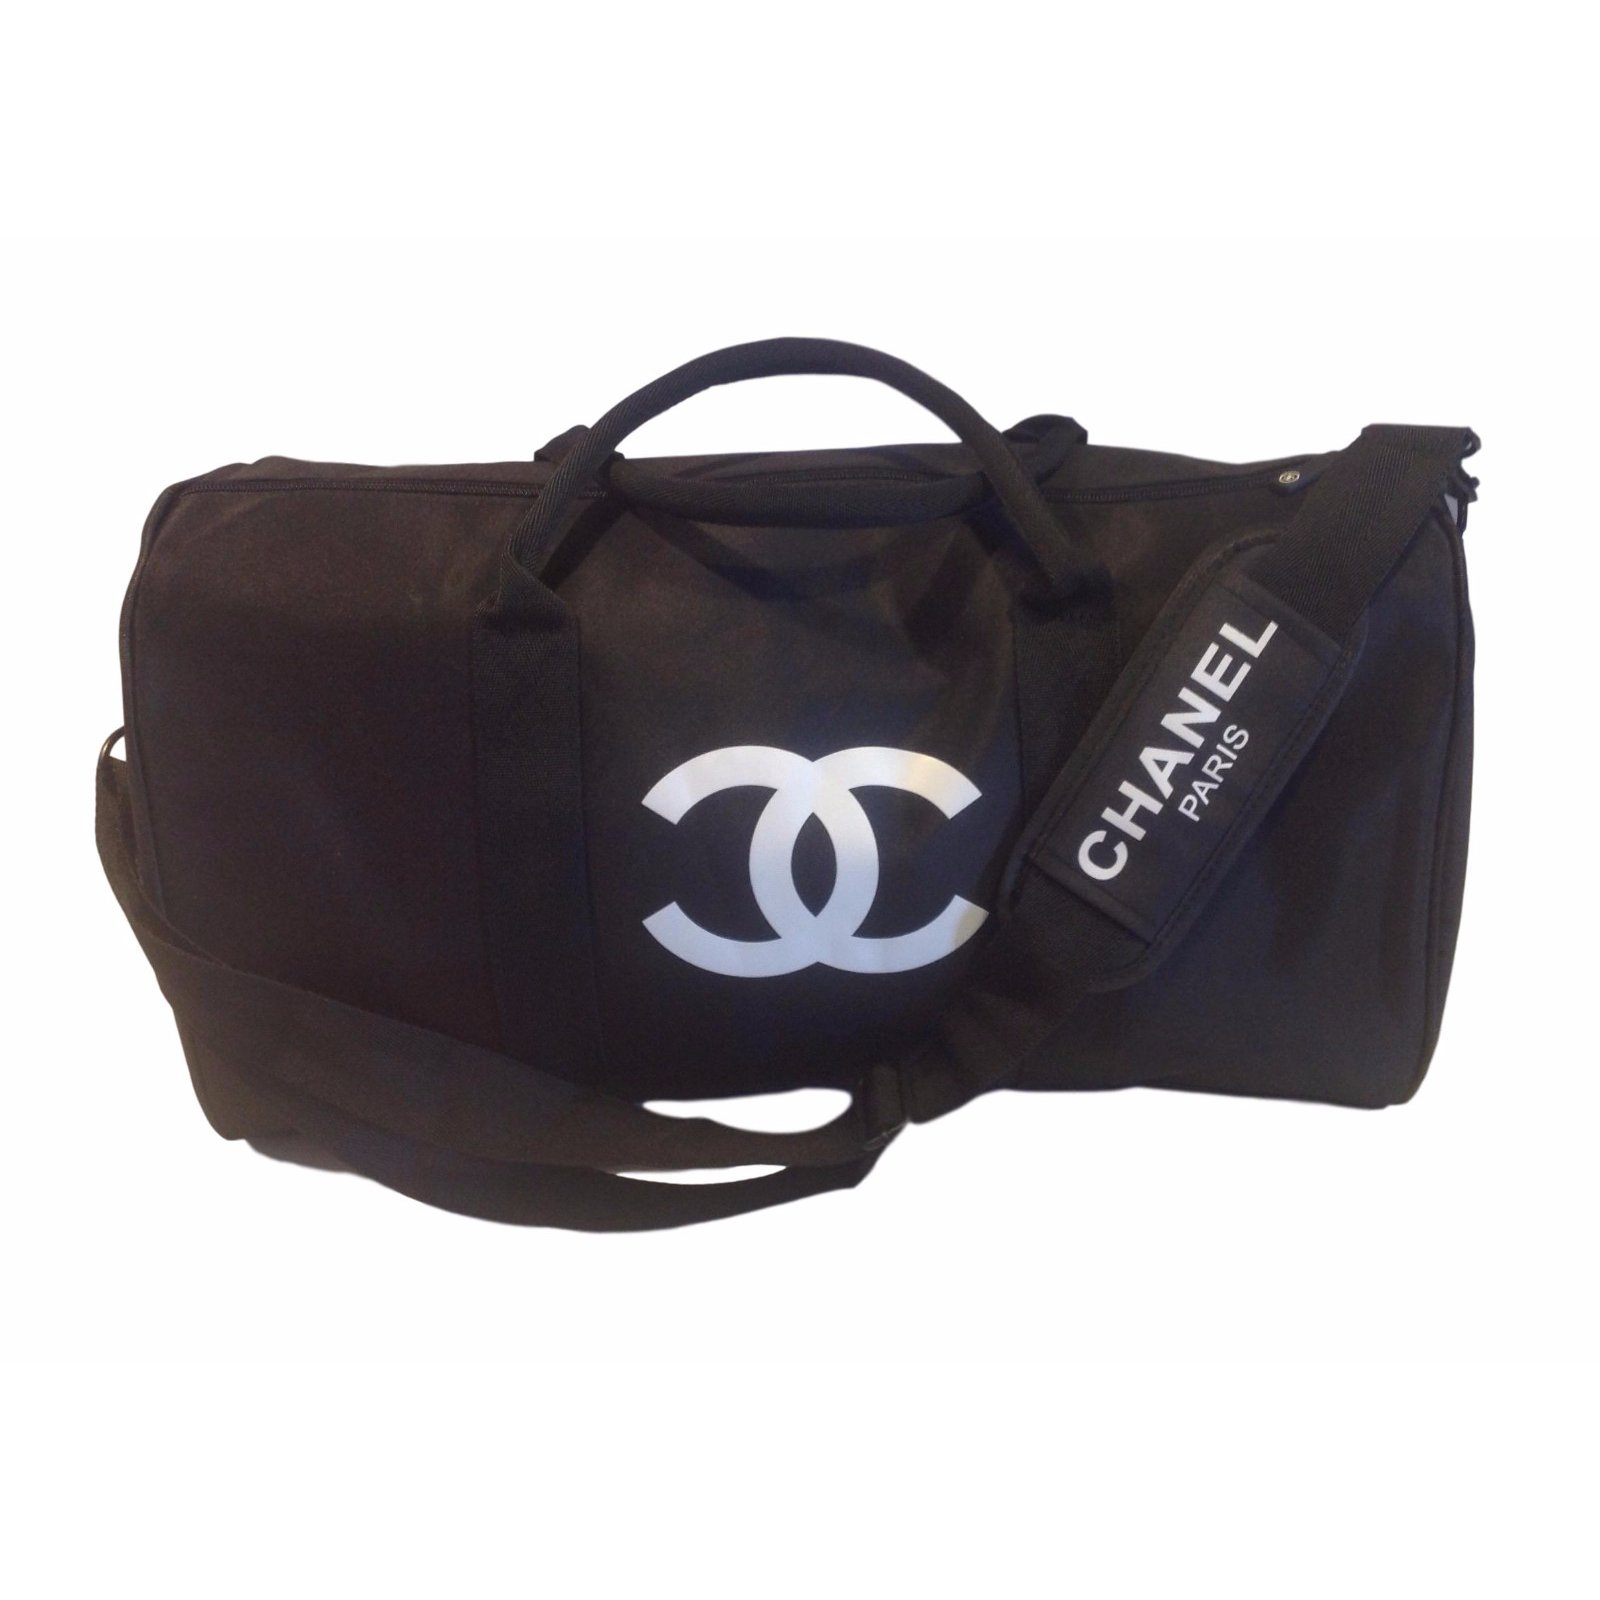 chanel vip gift travel bag